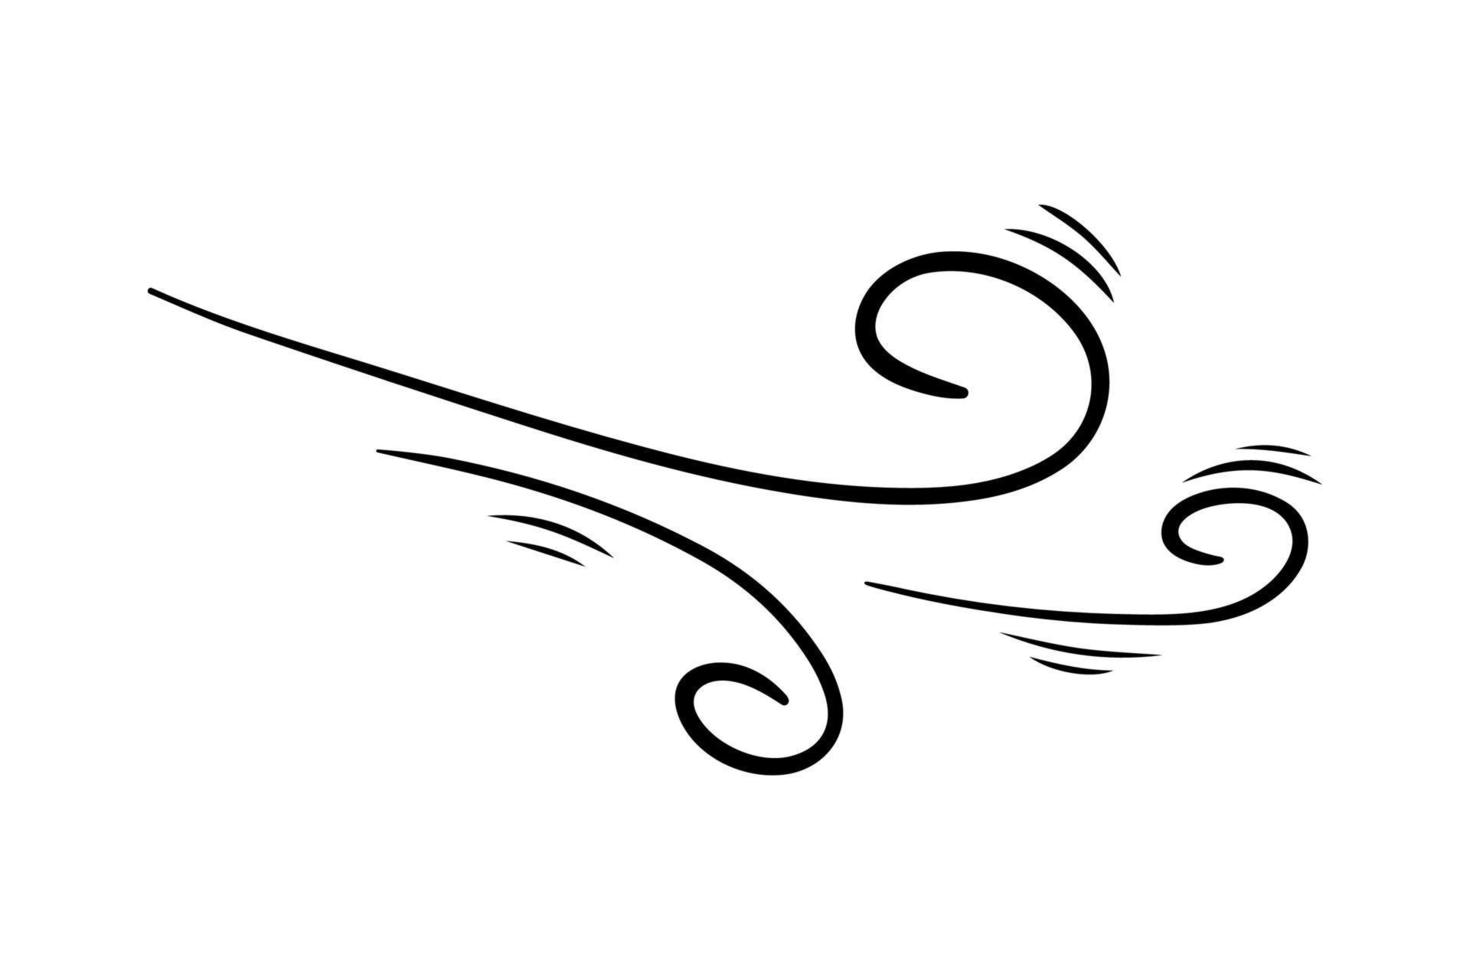 vind blåser i doodle stil, vektor illustration. våga kall luft under blåsigt väder. vindpust symbol kontur för tryck och design .isolerade svart linje element på en vit bakgrund